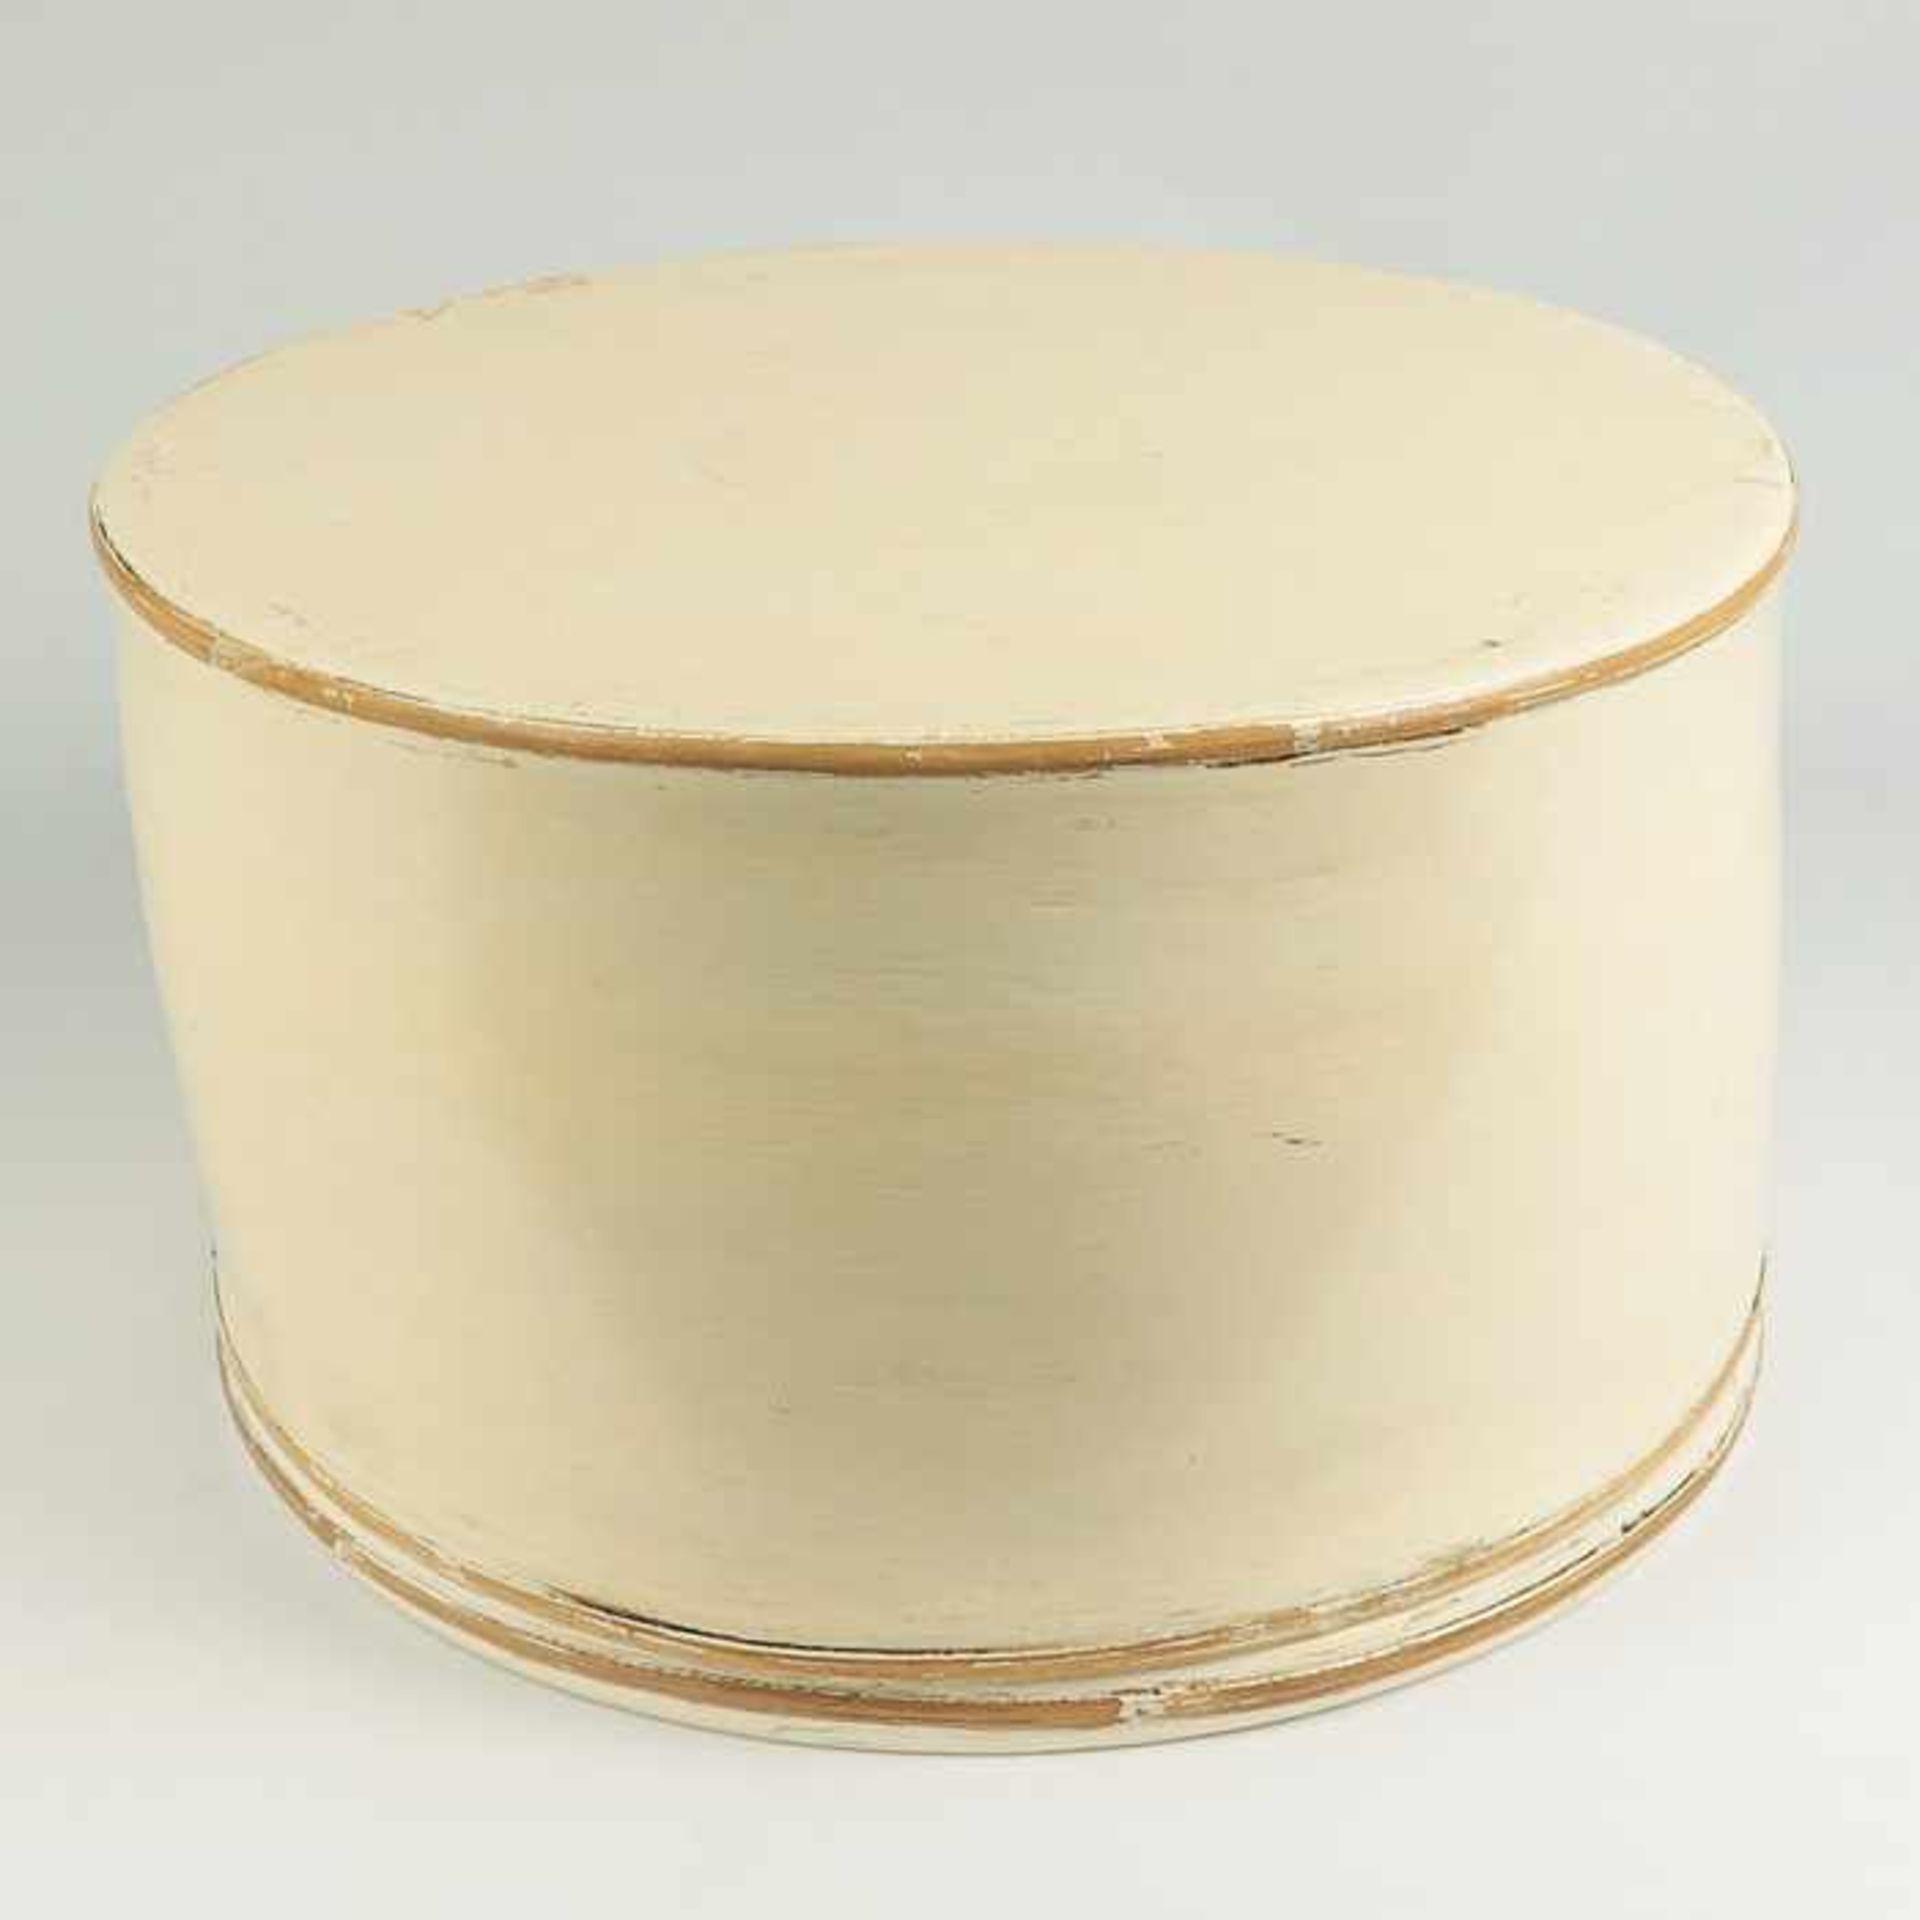 HutschachtelHolz, cremeweiß lackiert, rund, mit Deckel, Alters- u. Gebrauchssp., D ca. 30,5 cm- - -